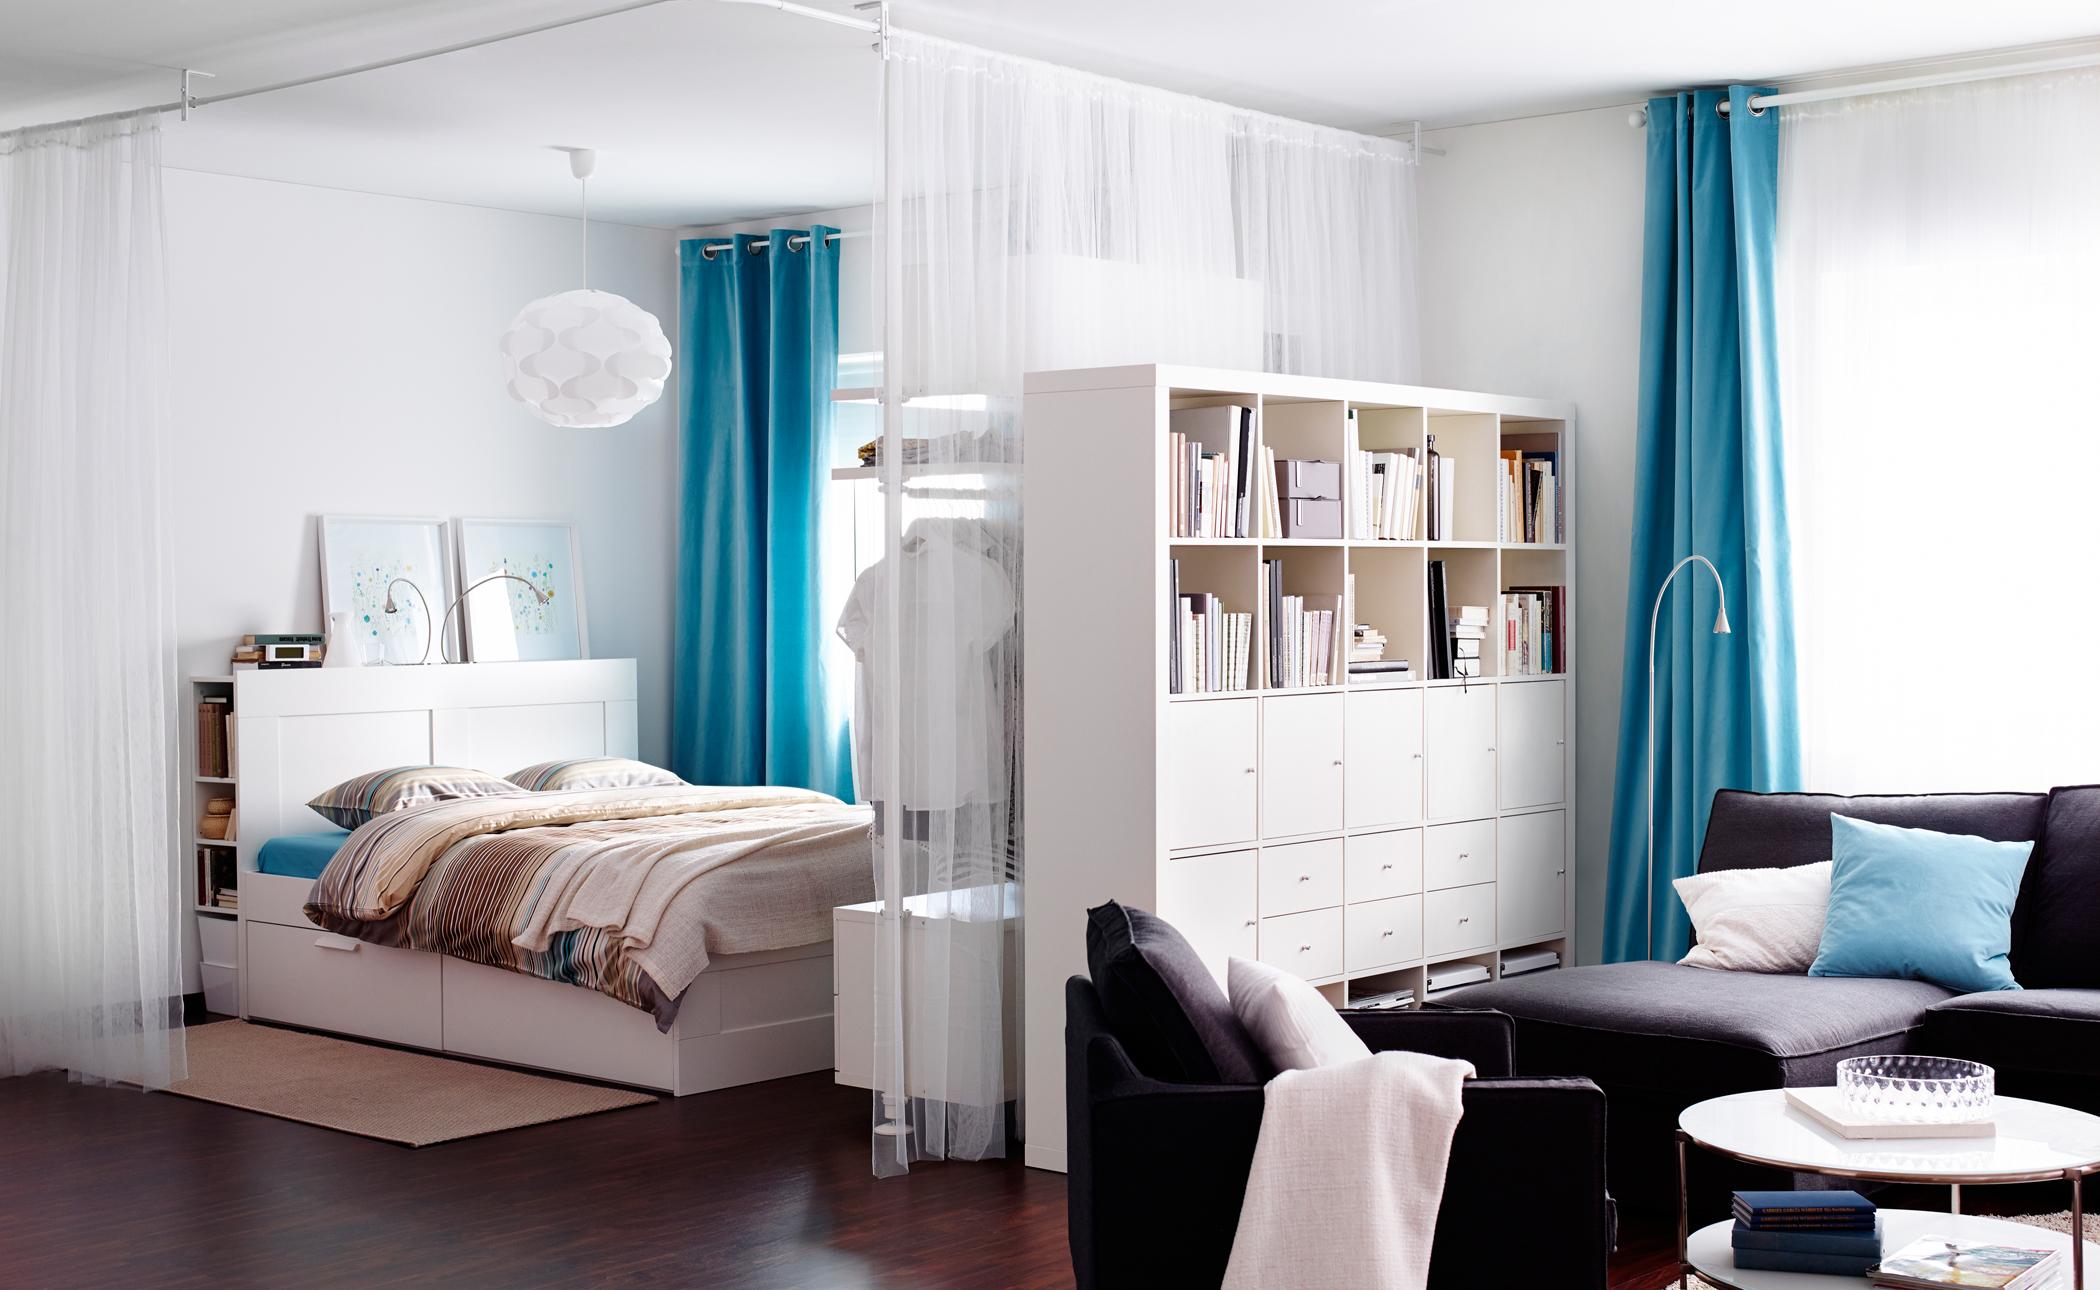 Vorhänge als Raumteiler #regal #bettkasten #vorhang #ikea #sitzecke #raumteiler ©Inter IKEA Systems B.V